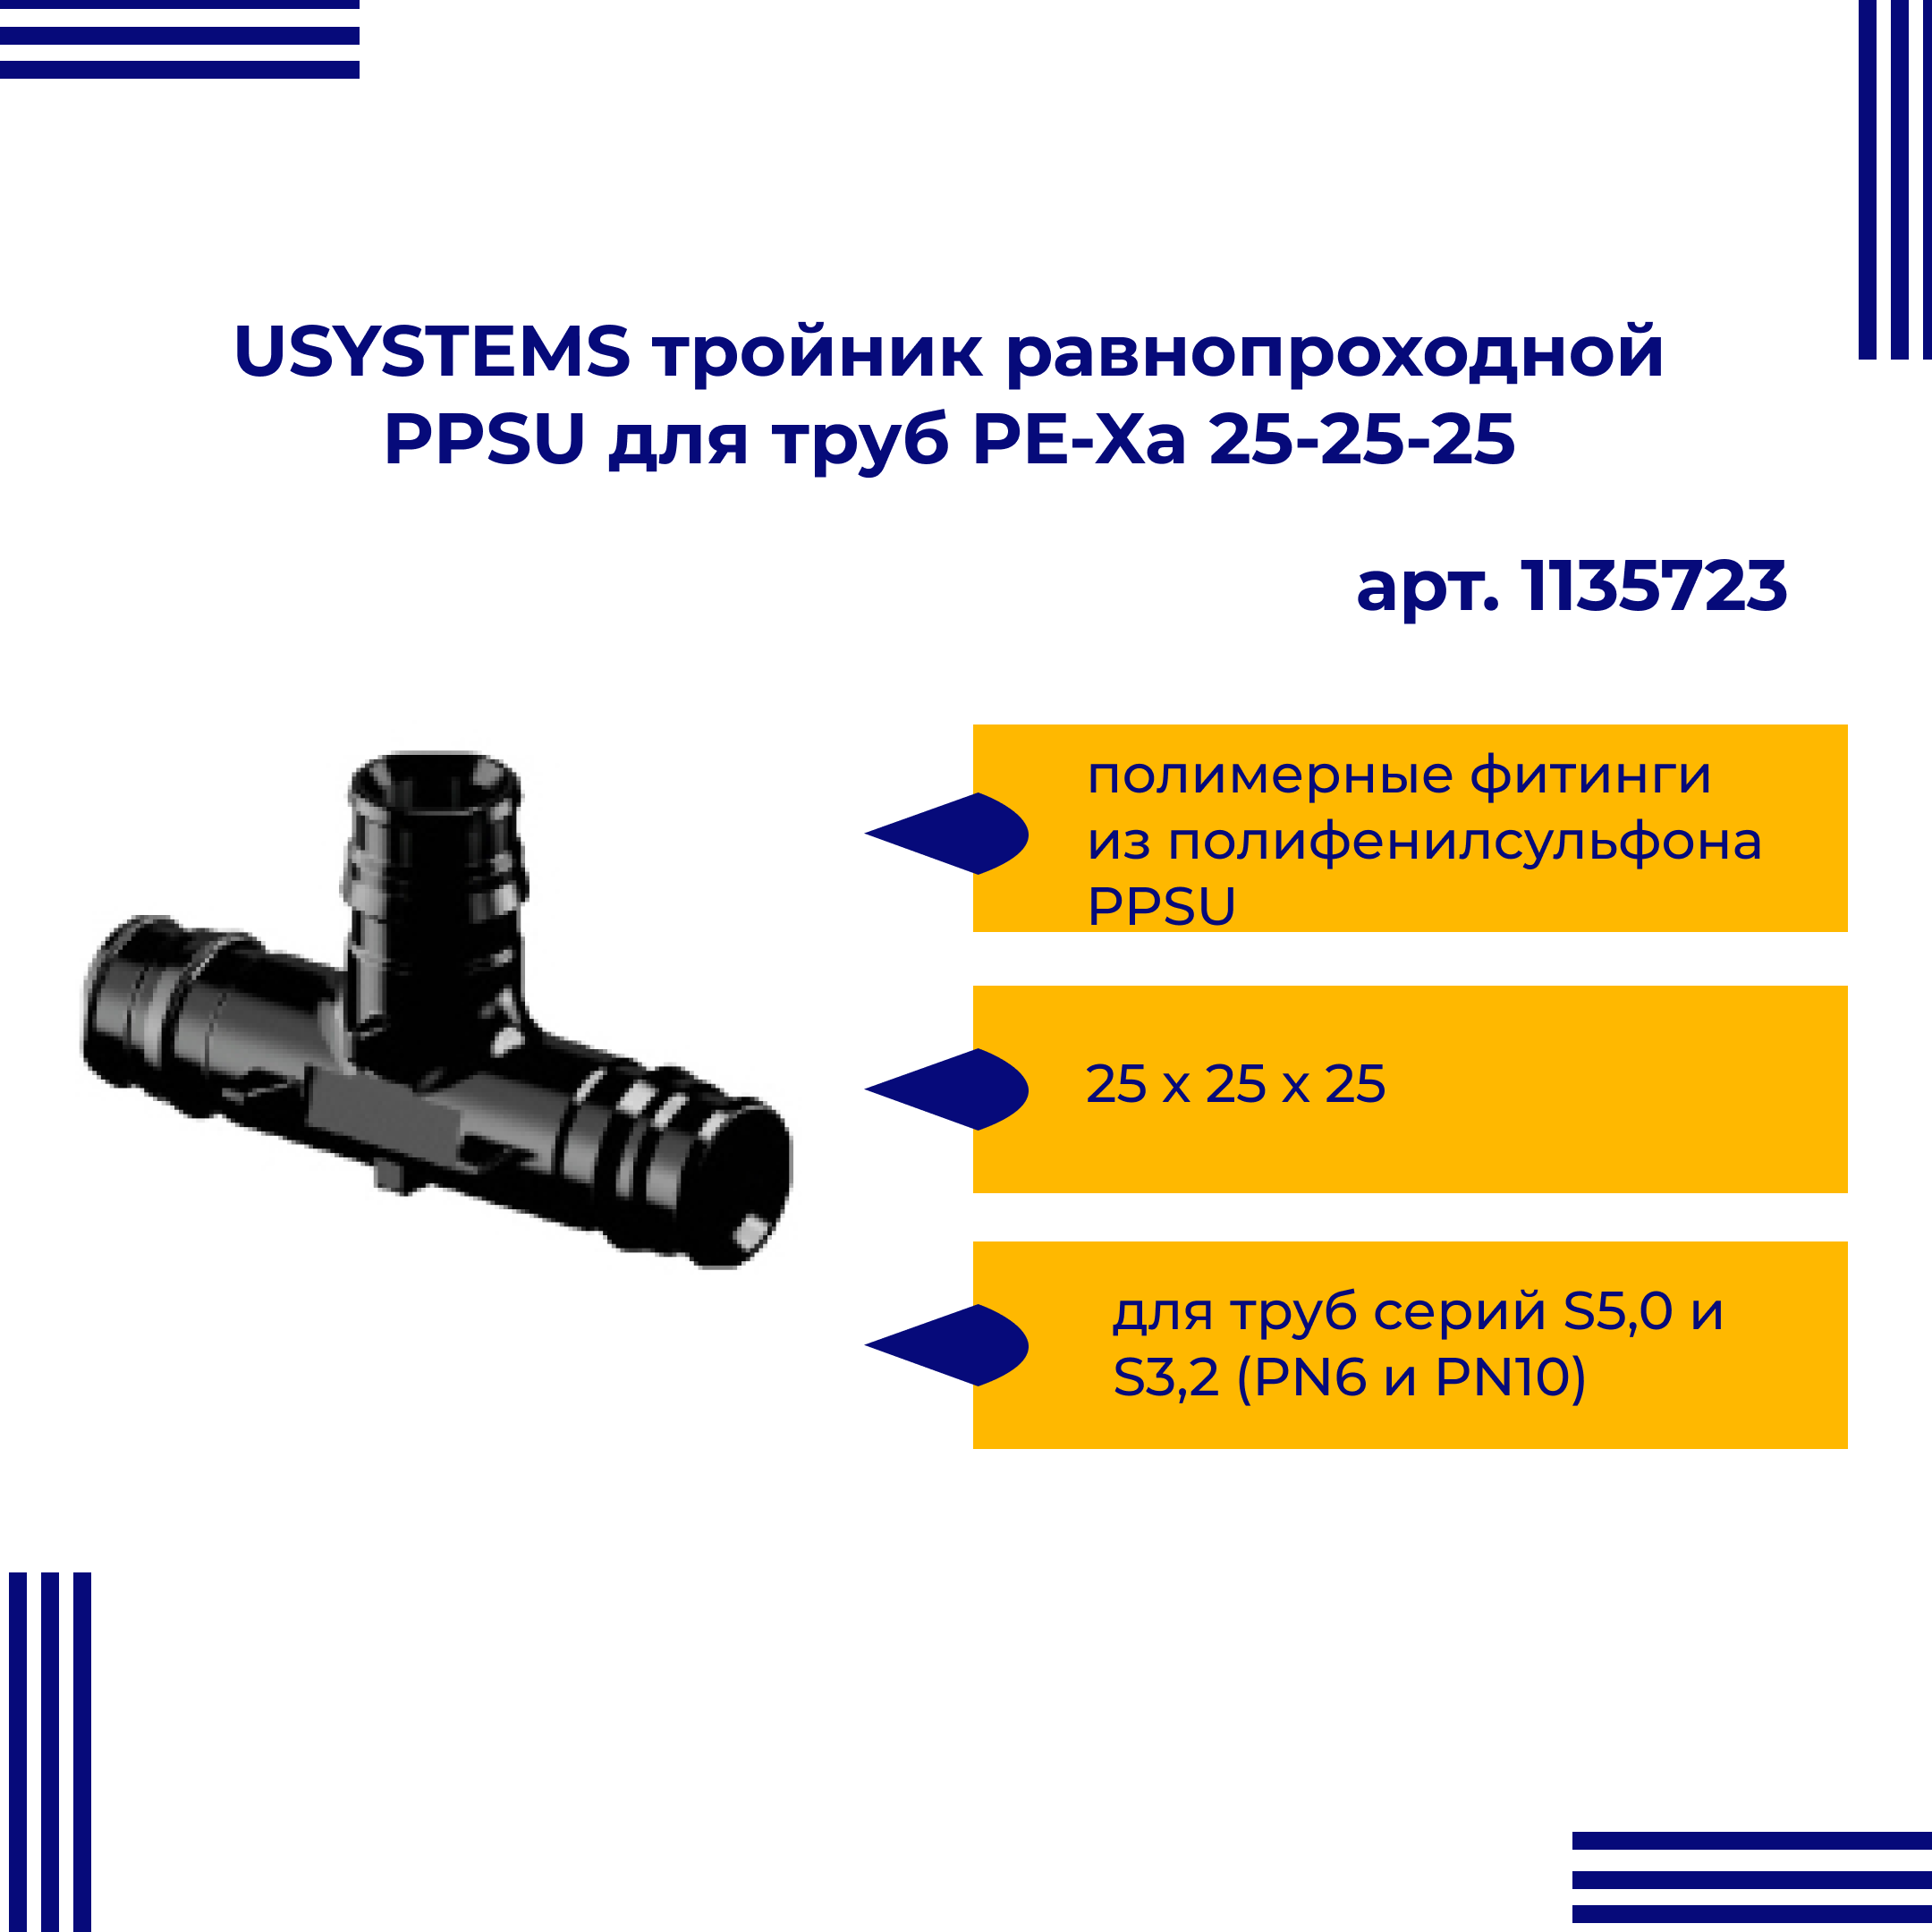 Тройник PPSU USYSTEMS 1135723 равнопроходной для труб PE-Xa 25-25-25 тройник viega ввв 1 2 1 2 1 2 бронза rx равнопроходной 264222